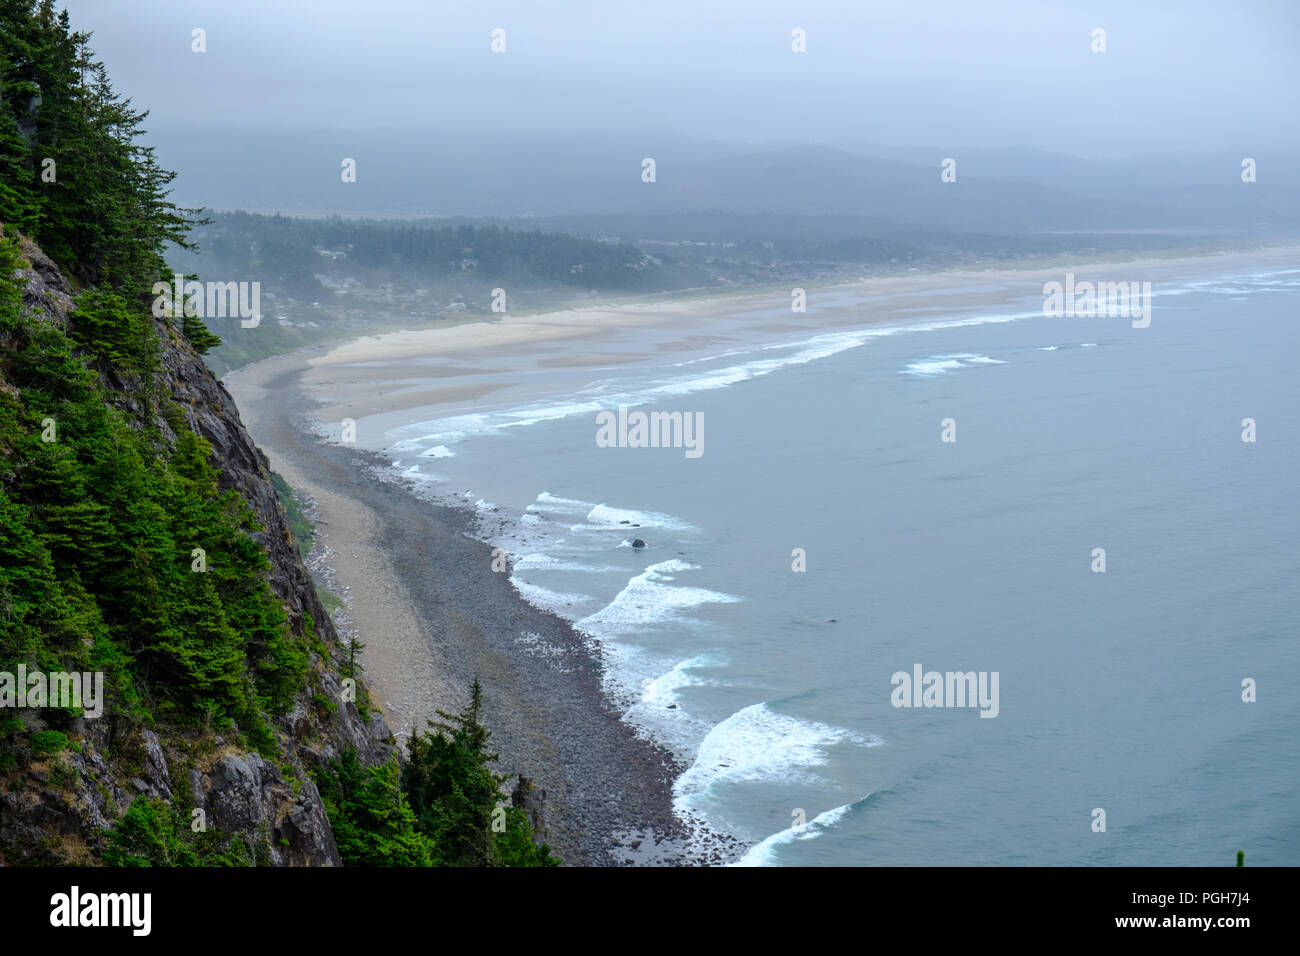 Oregon coast north of Garibaldi, USA Stock Photo